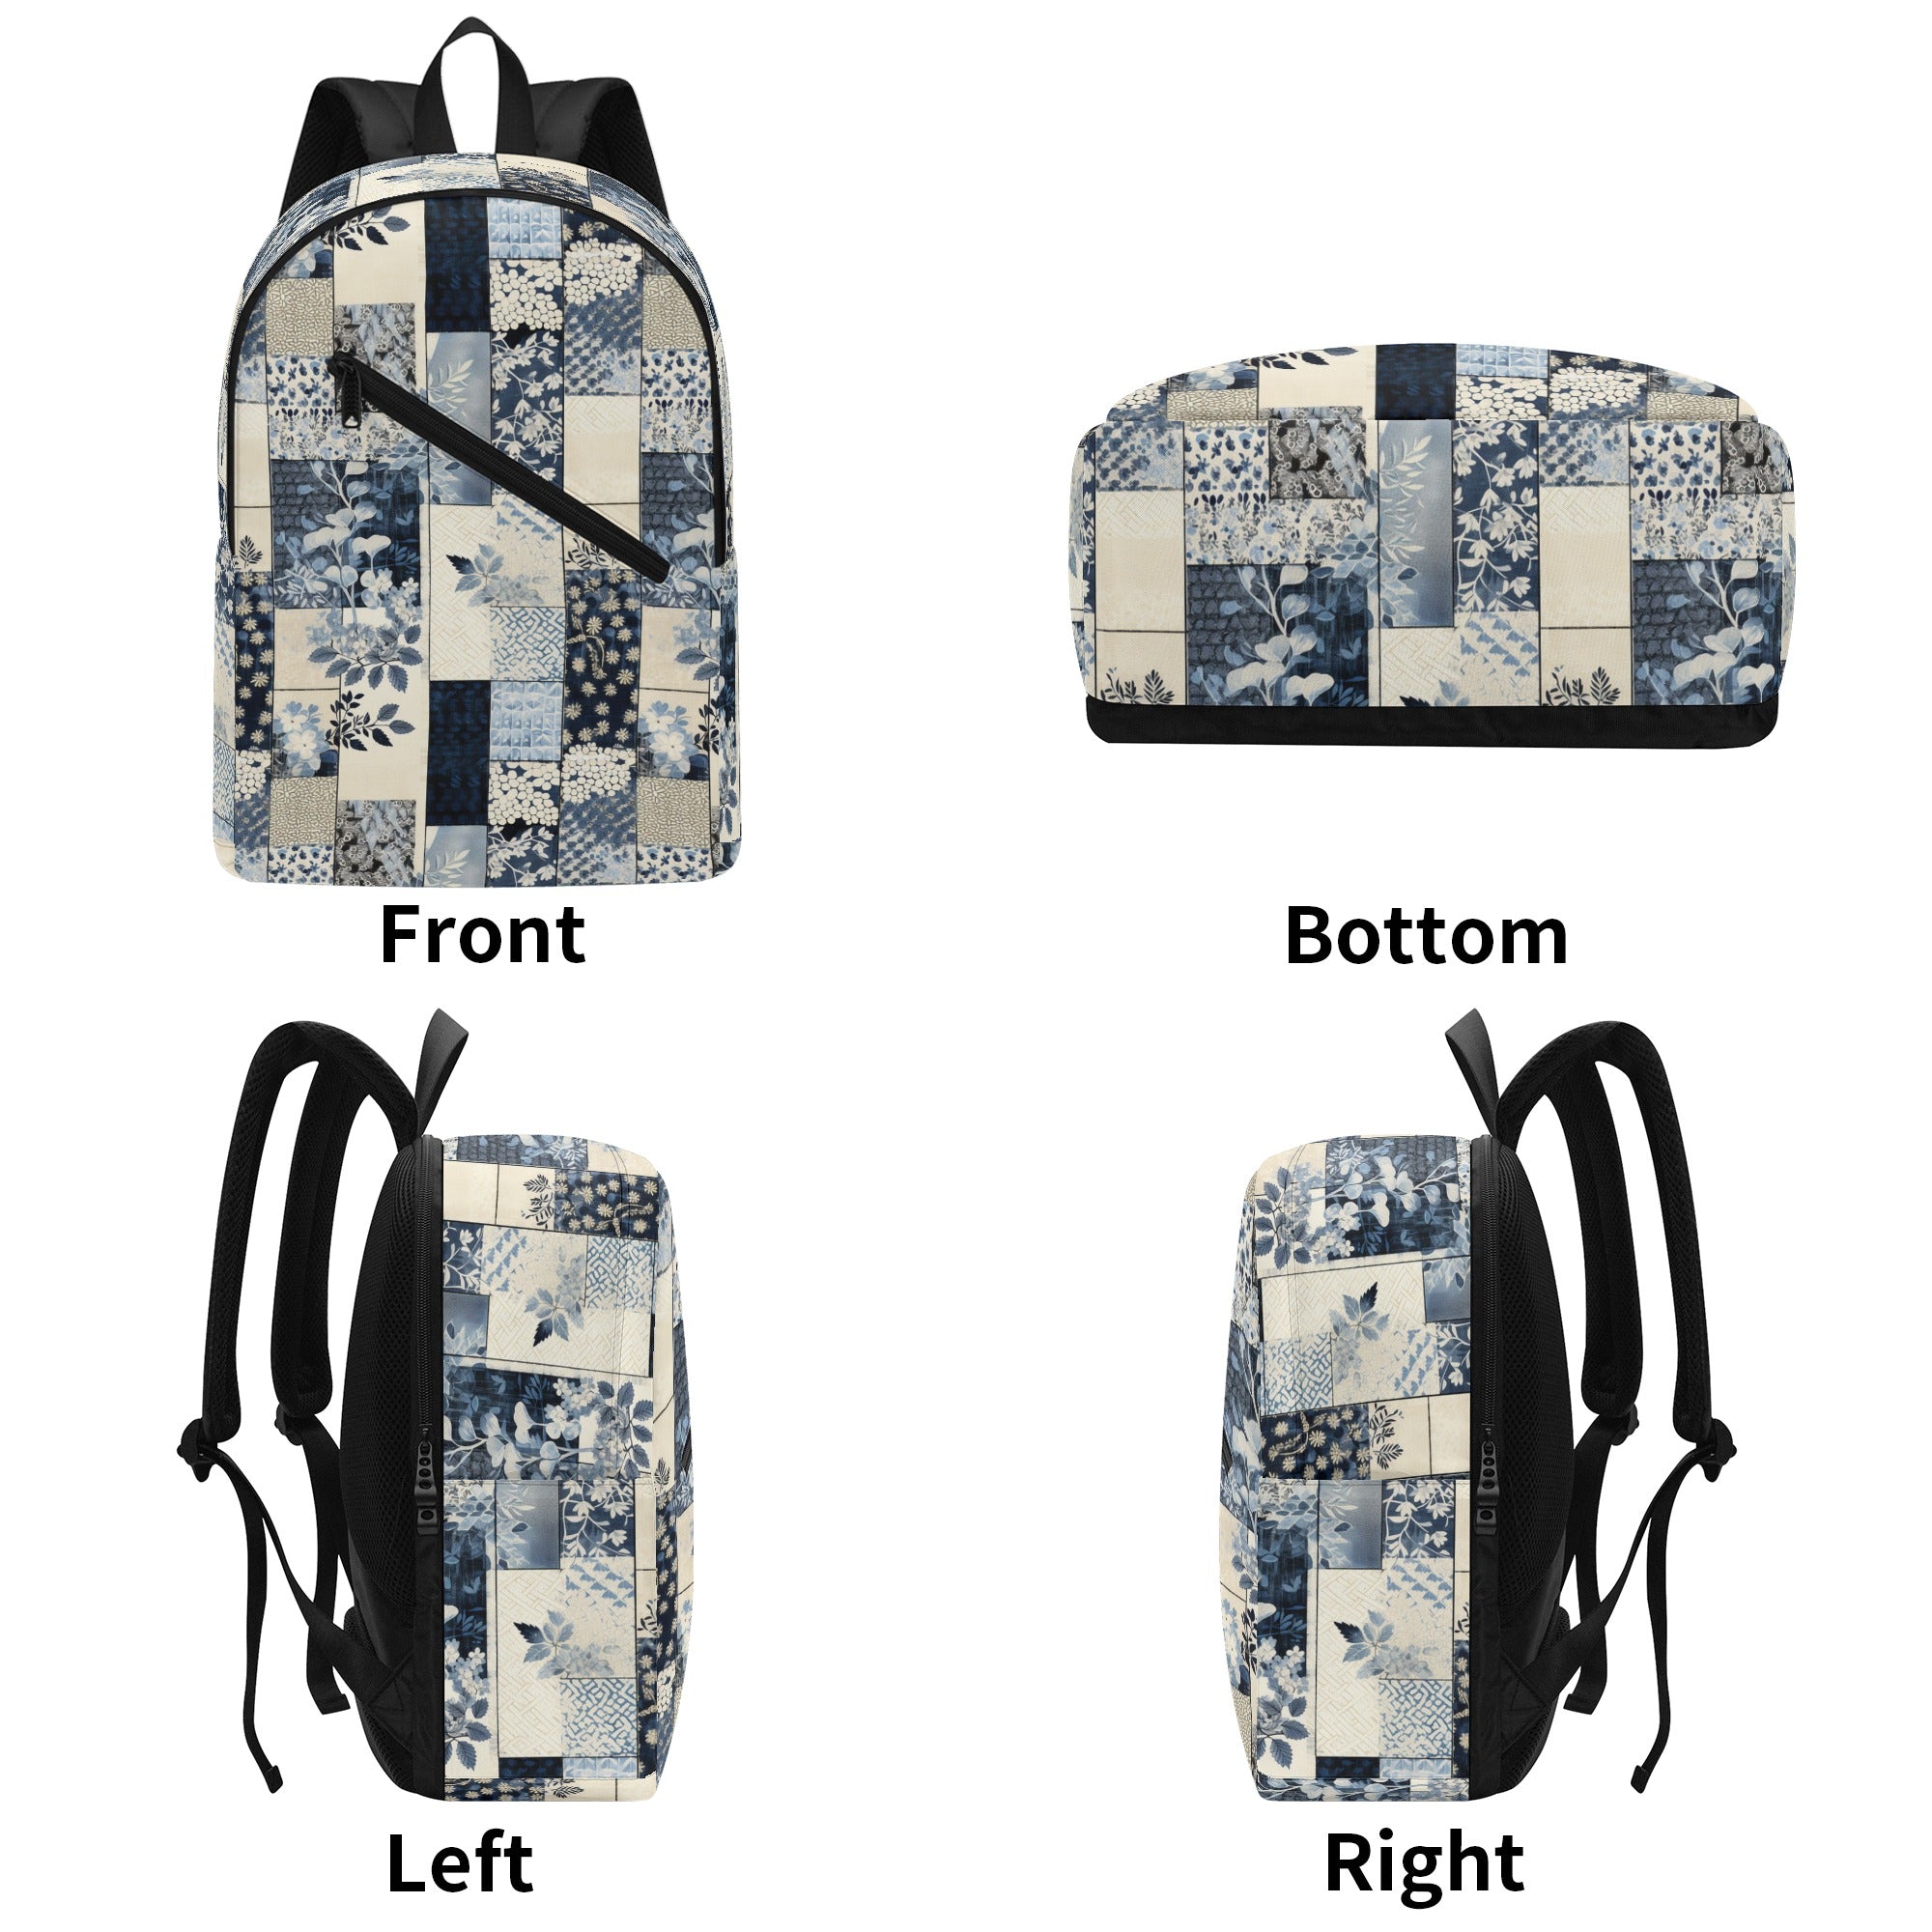 Blue Floral Patchwork Design Backpack